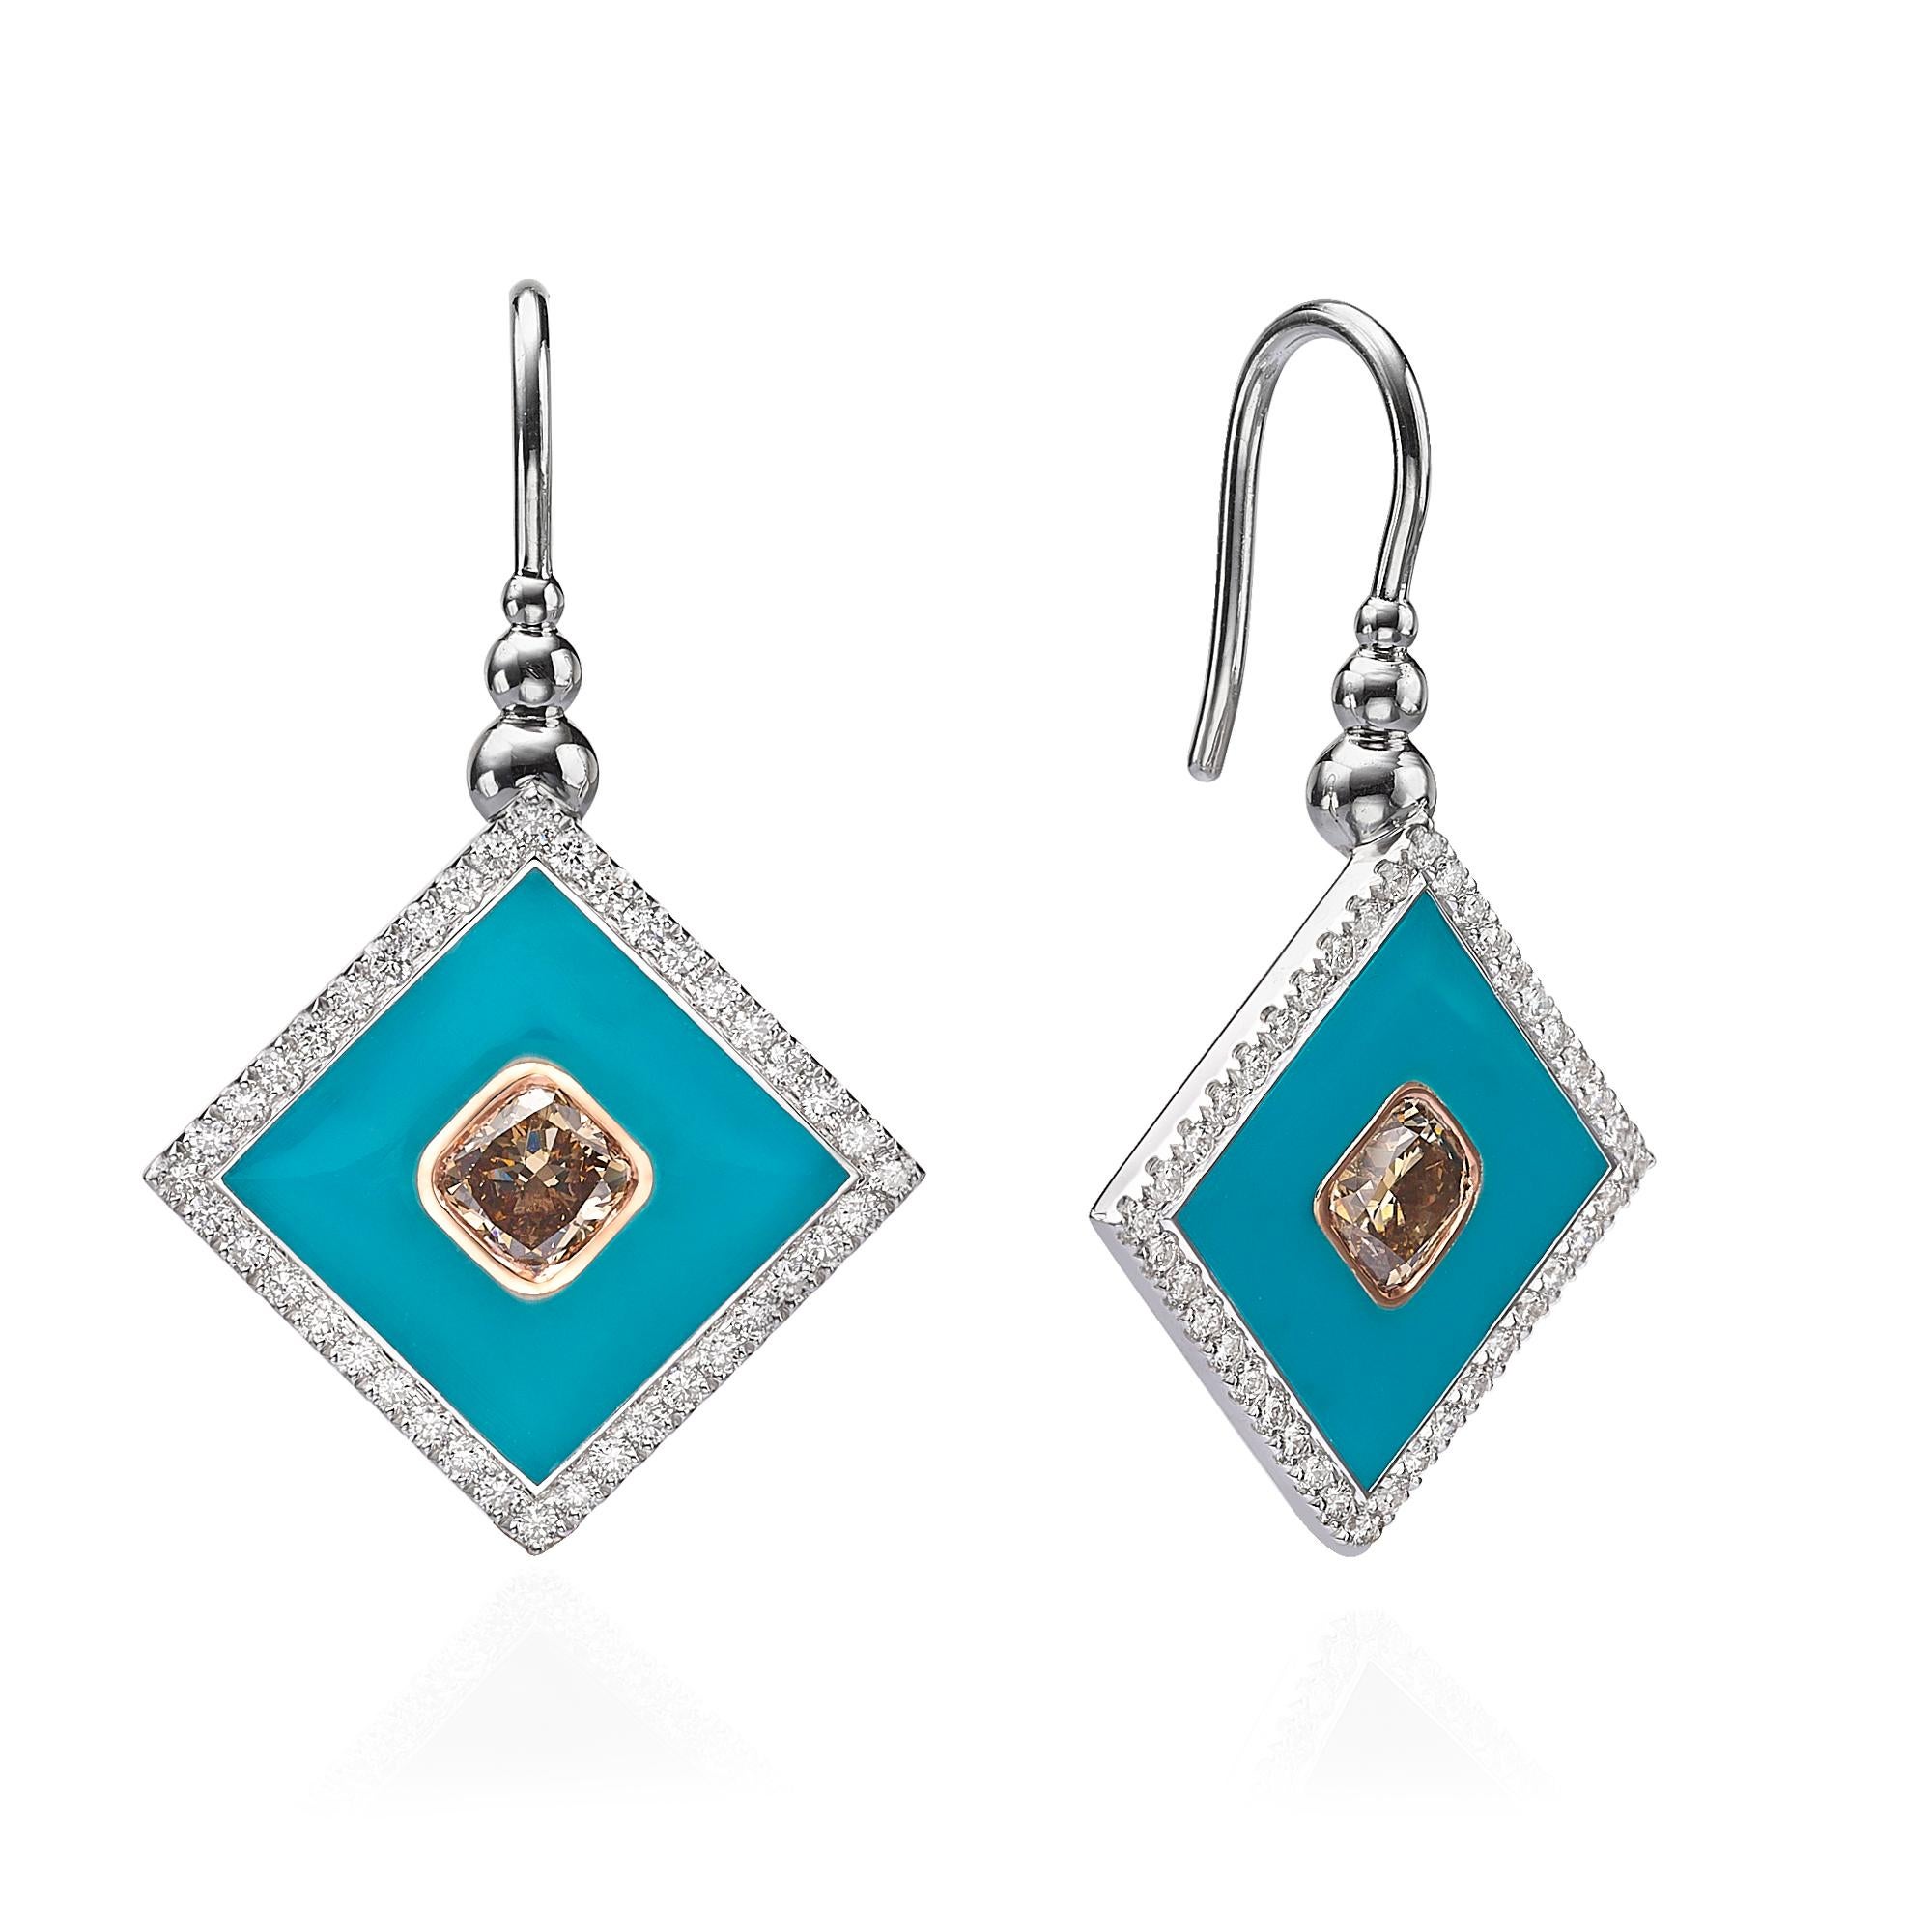 SKU# 4006130

Wir präsentieren ein schönes Paar quadratische Diamantohrringe aus 18 Karat Weiß- und Roségold mit blauer Emaille. Diese Ohrringe bestechen durch ihre orangebraunen Mittelsteine im Kissenschliff, die von glänzendem Roségold umrahmt